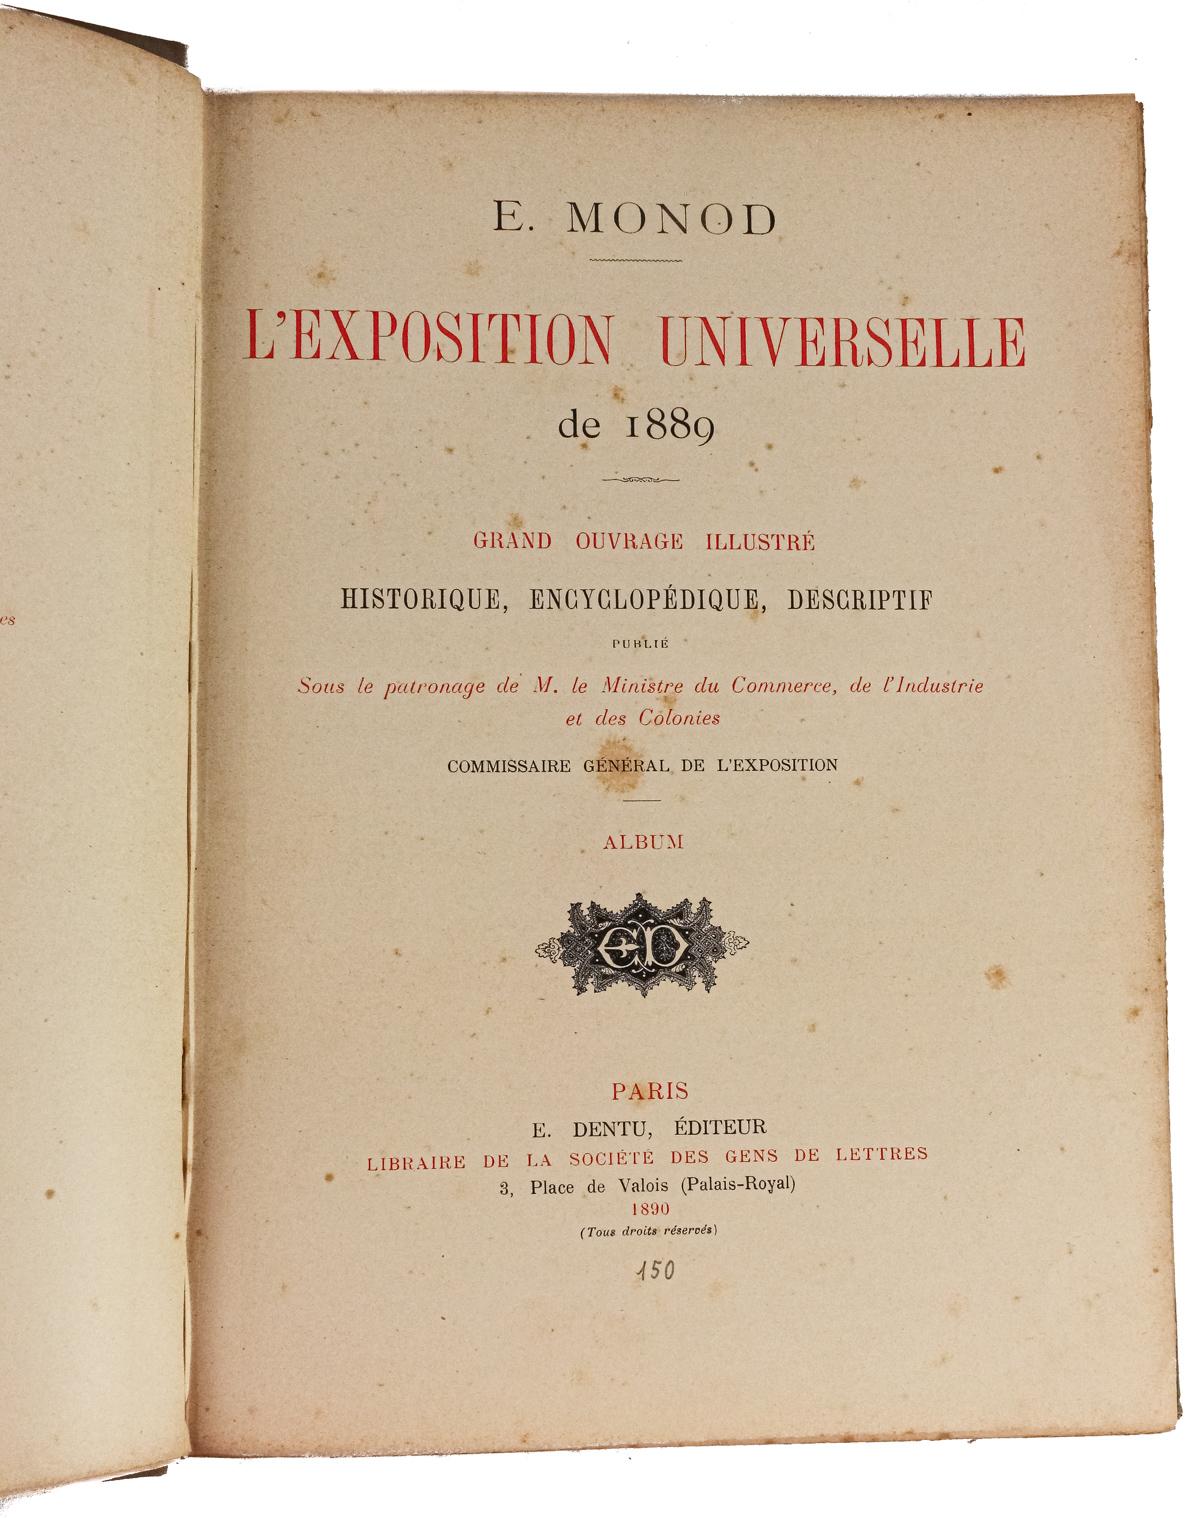 "EXPOSITION UNIVERSELLE DE 1889"